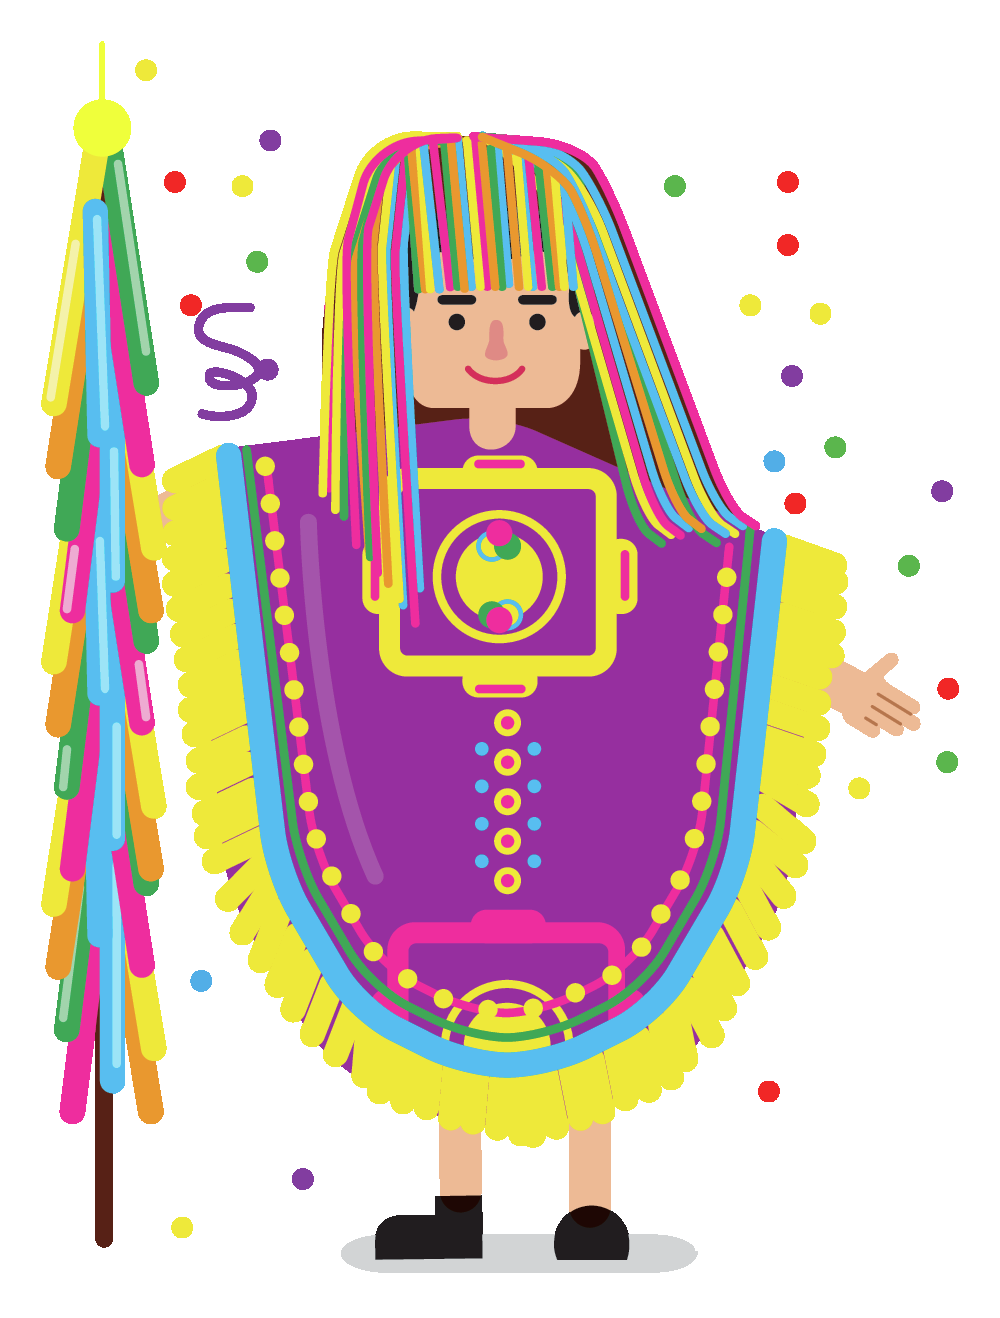 Ilustração. Homem com peruca colorida usando uma espécie de poncho roxo com detalhes coloridos e segurando uma mastro também com fitas coloridas.